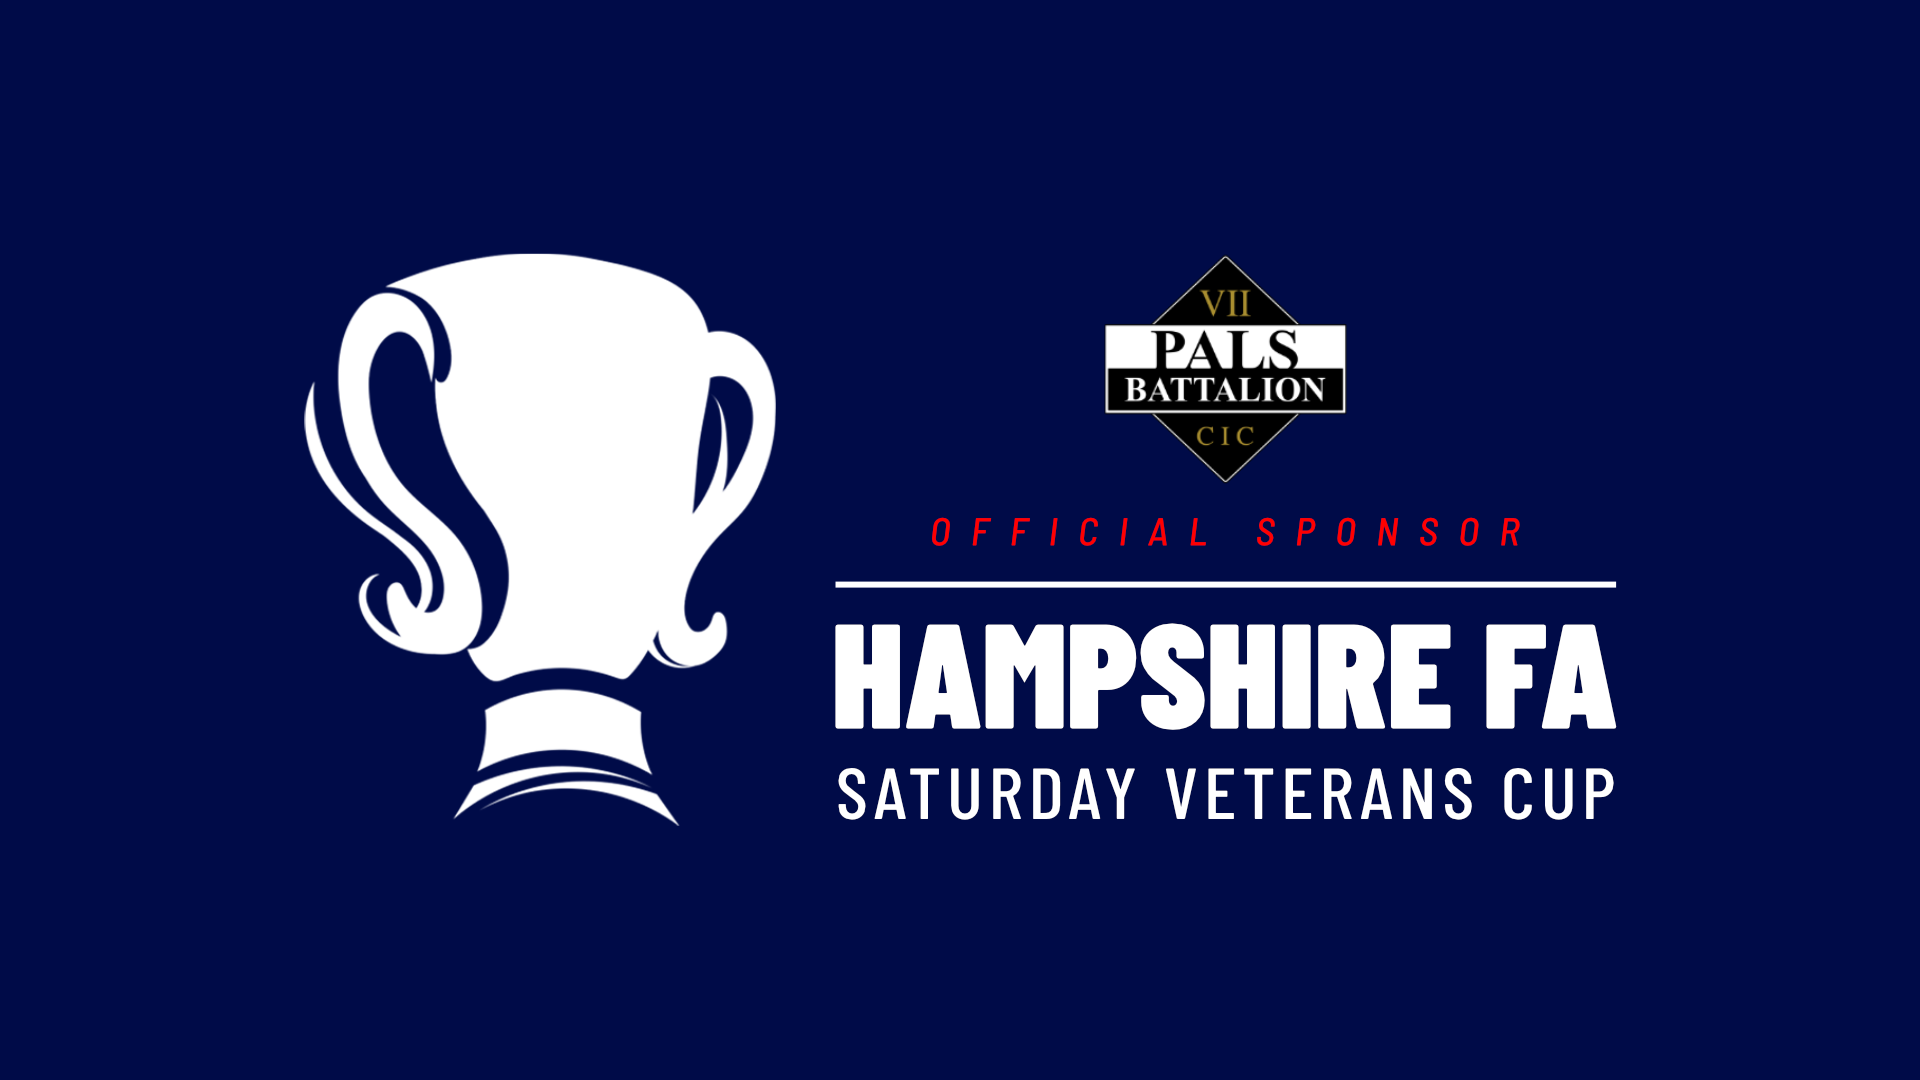 PALS Battalion Saturday Veterans Cup Hampshire FA